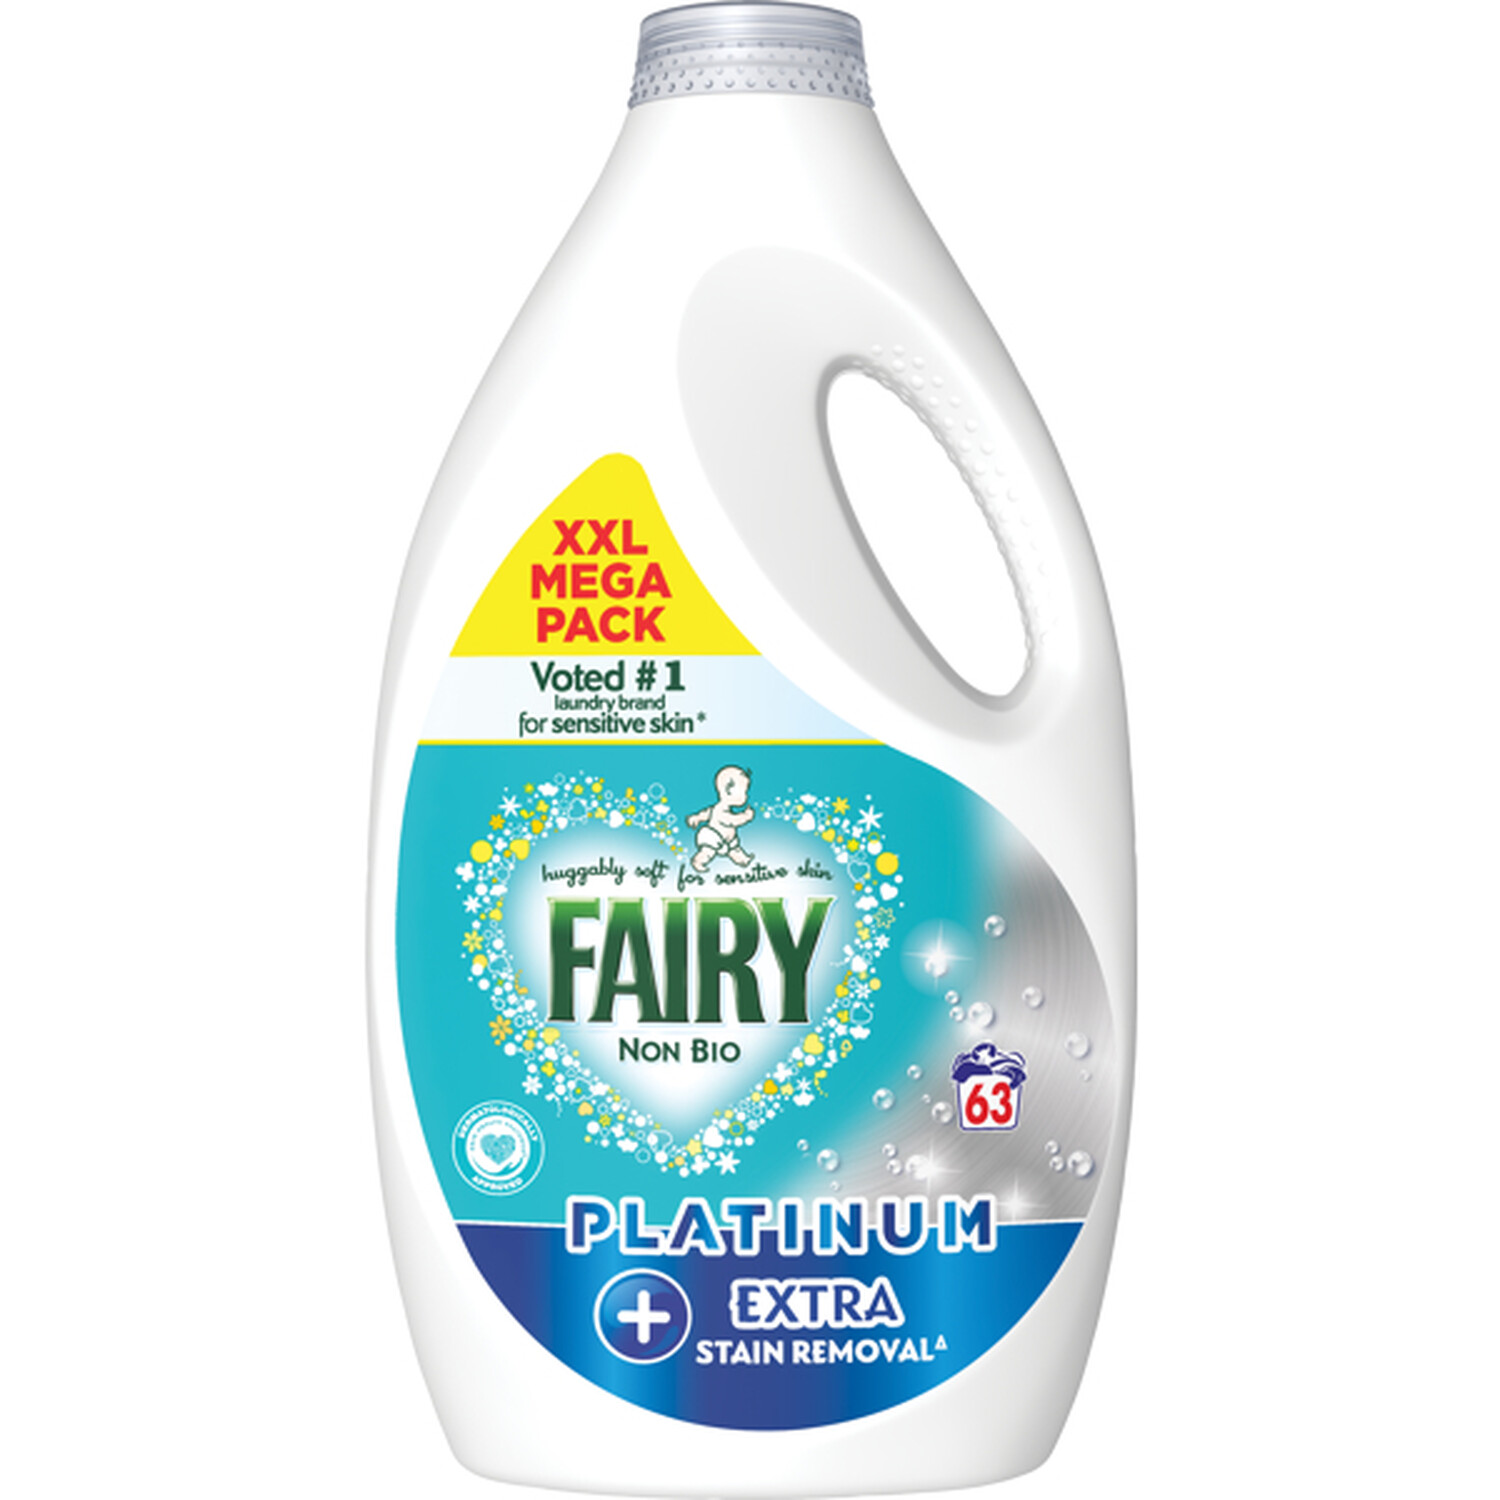 Fairy Non Bio Stain Remover Liquid 63 Washes Image